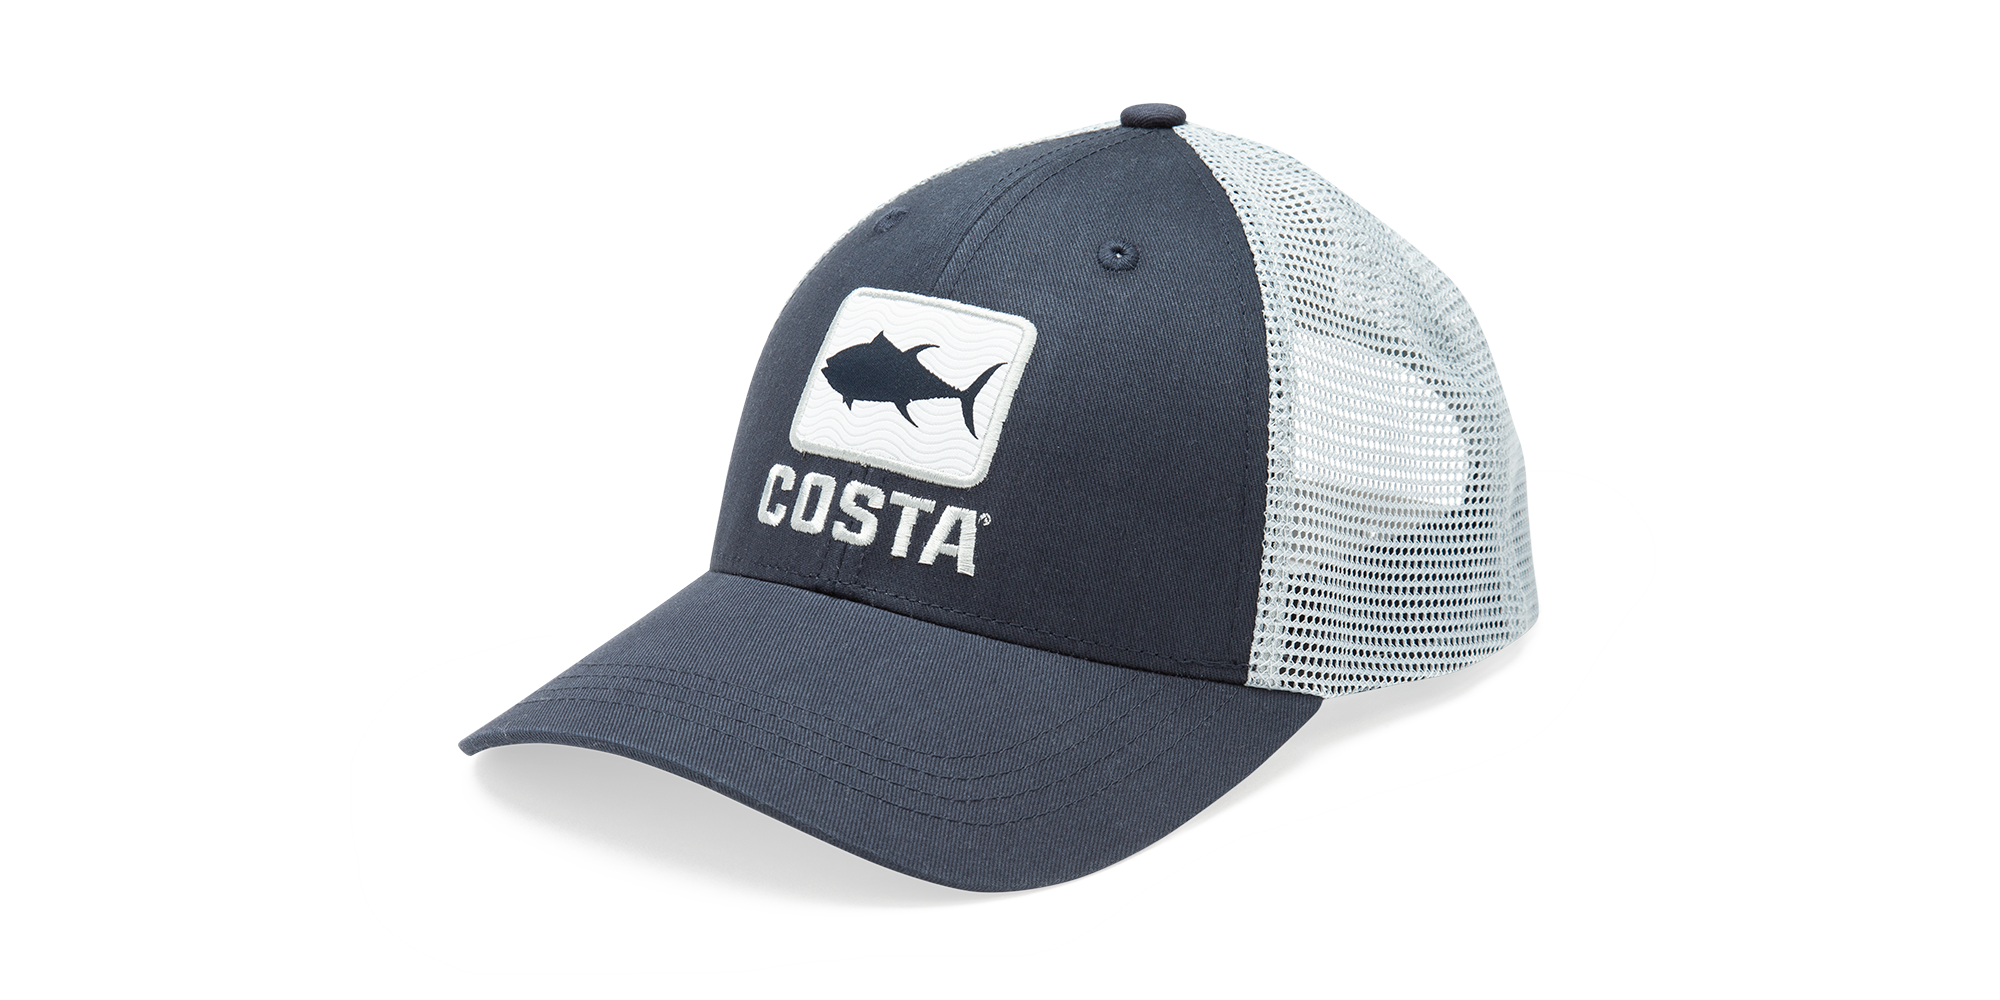 shield adjustable fish hat trucker mesh cap New Costa Del Mar black shark cap 